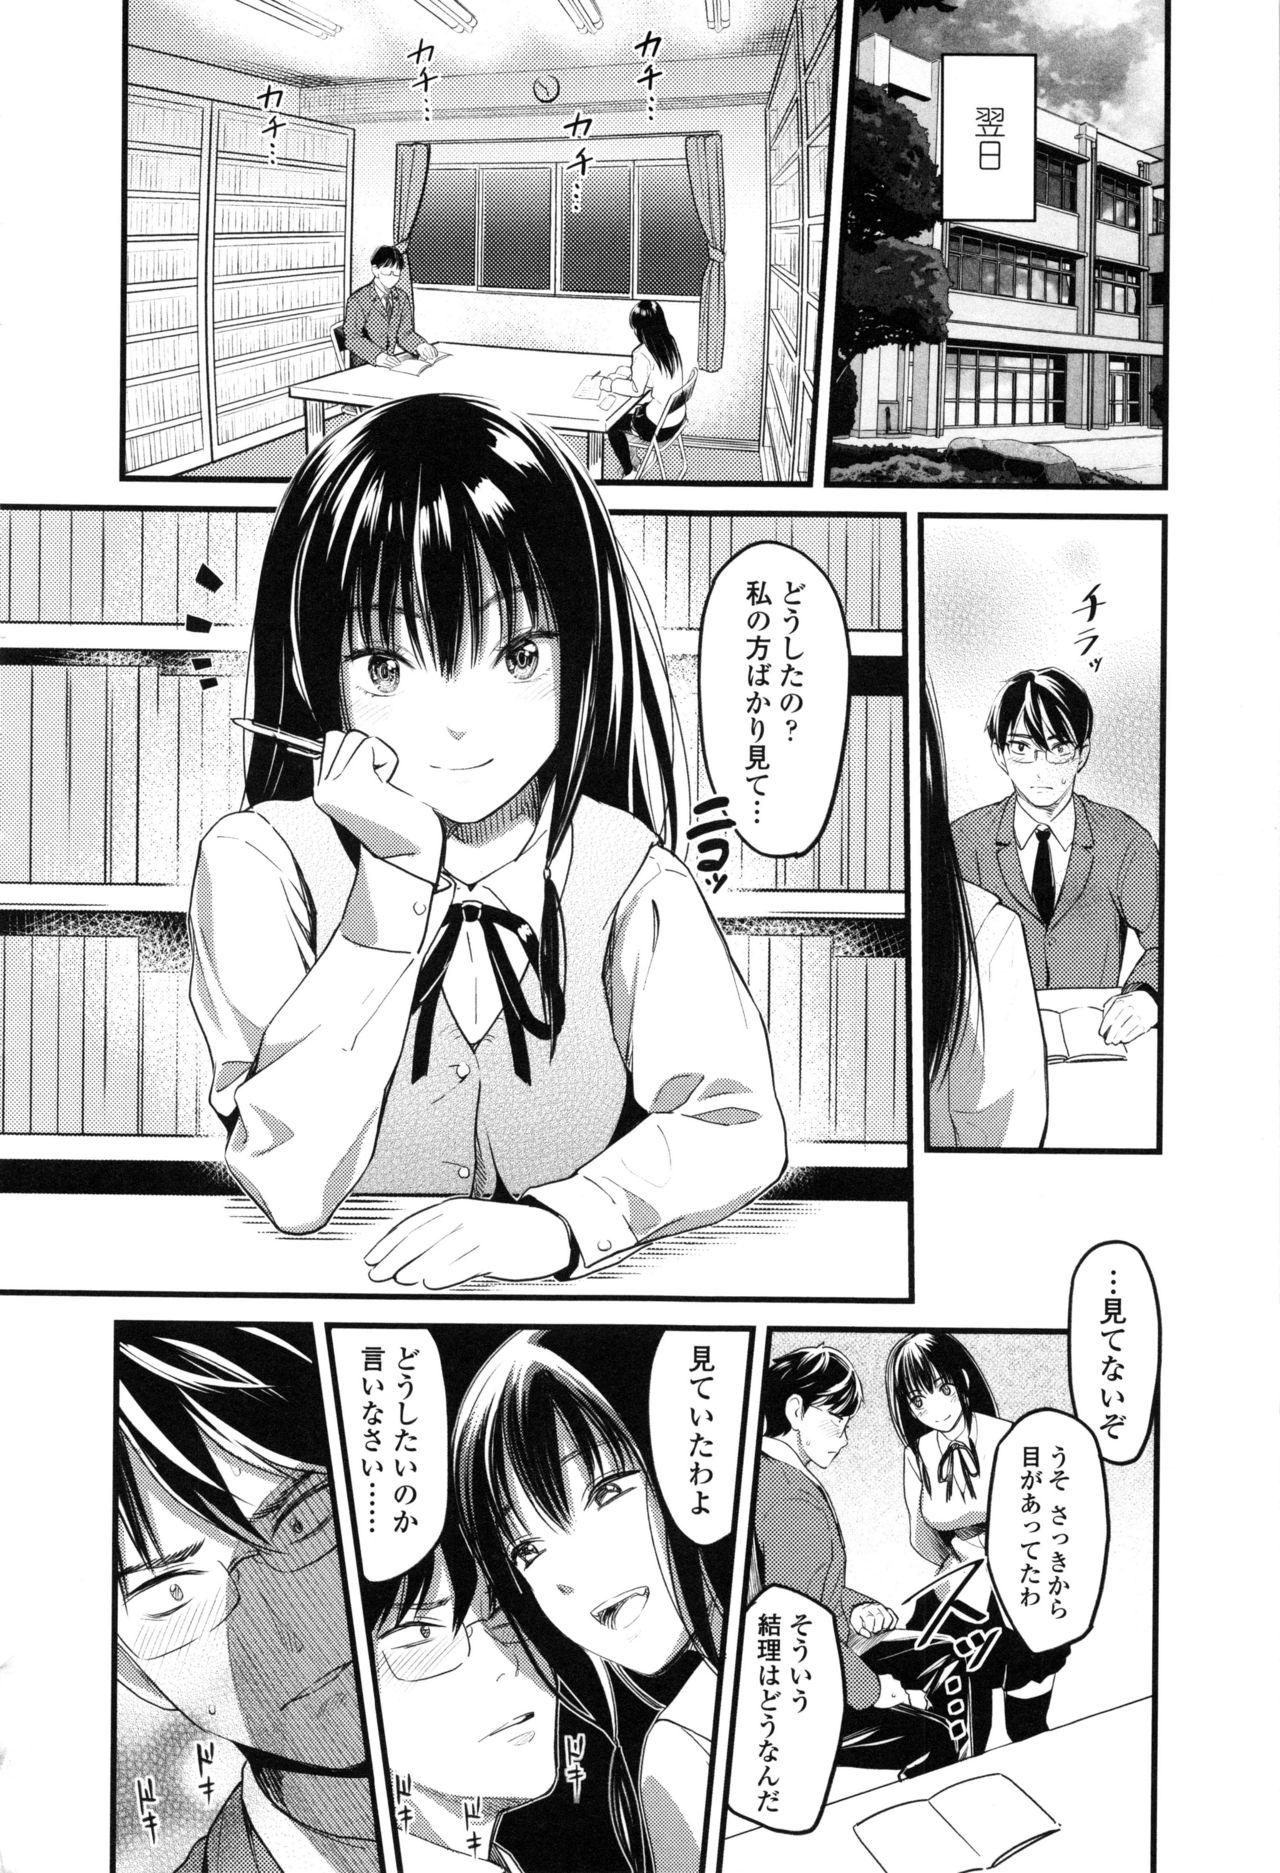 Seifuku no Mama Aishinasai! - Love in school uniform 49